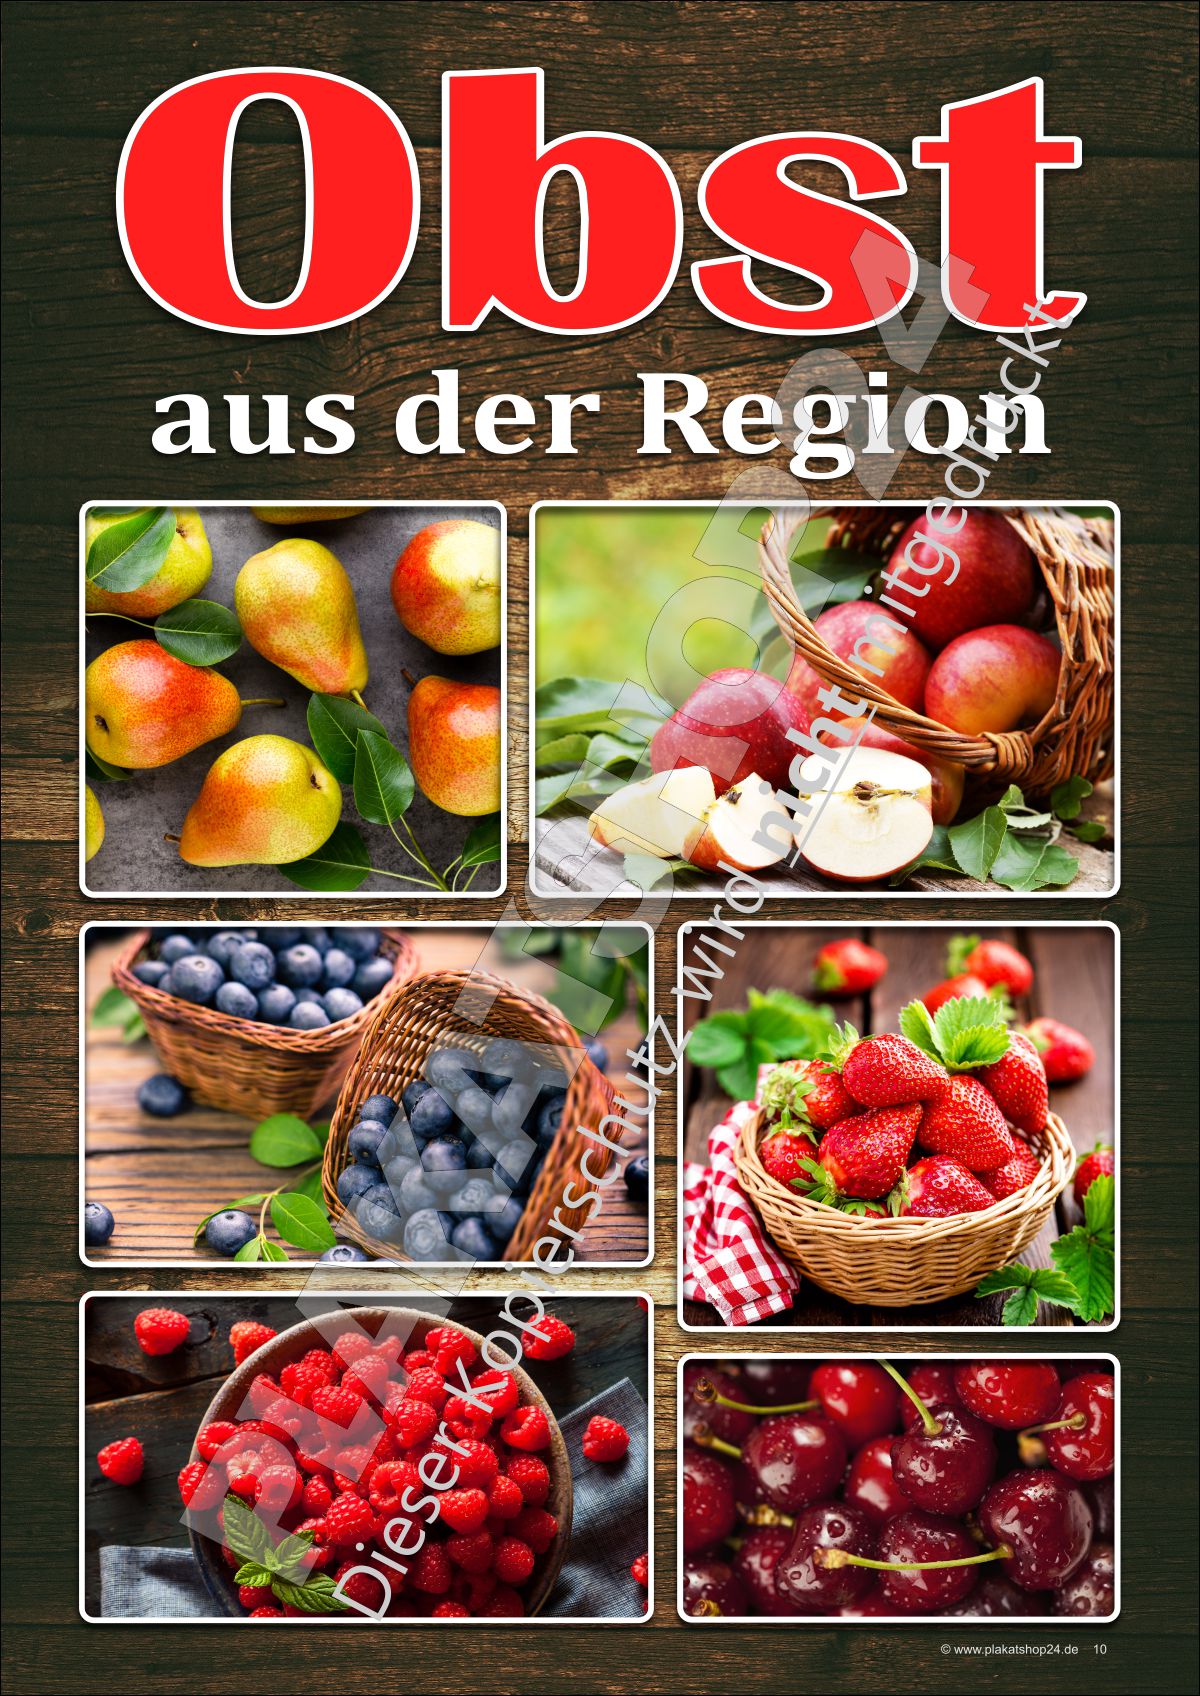 Plakat für Werbung für regionales Obst